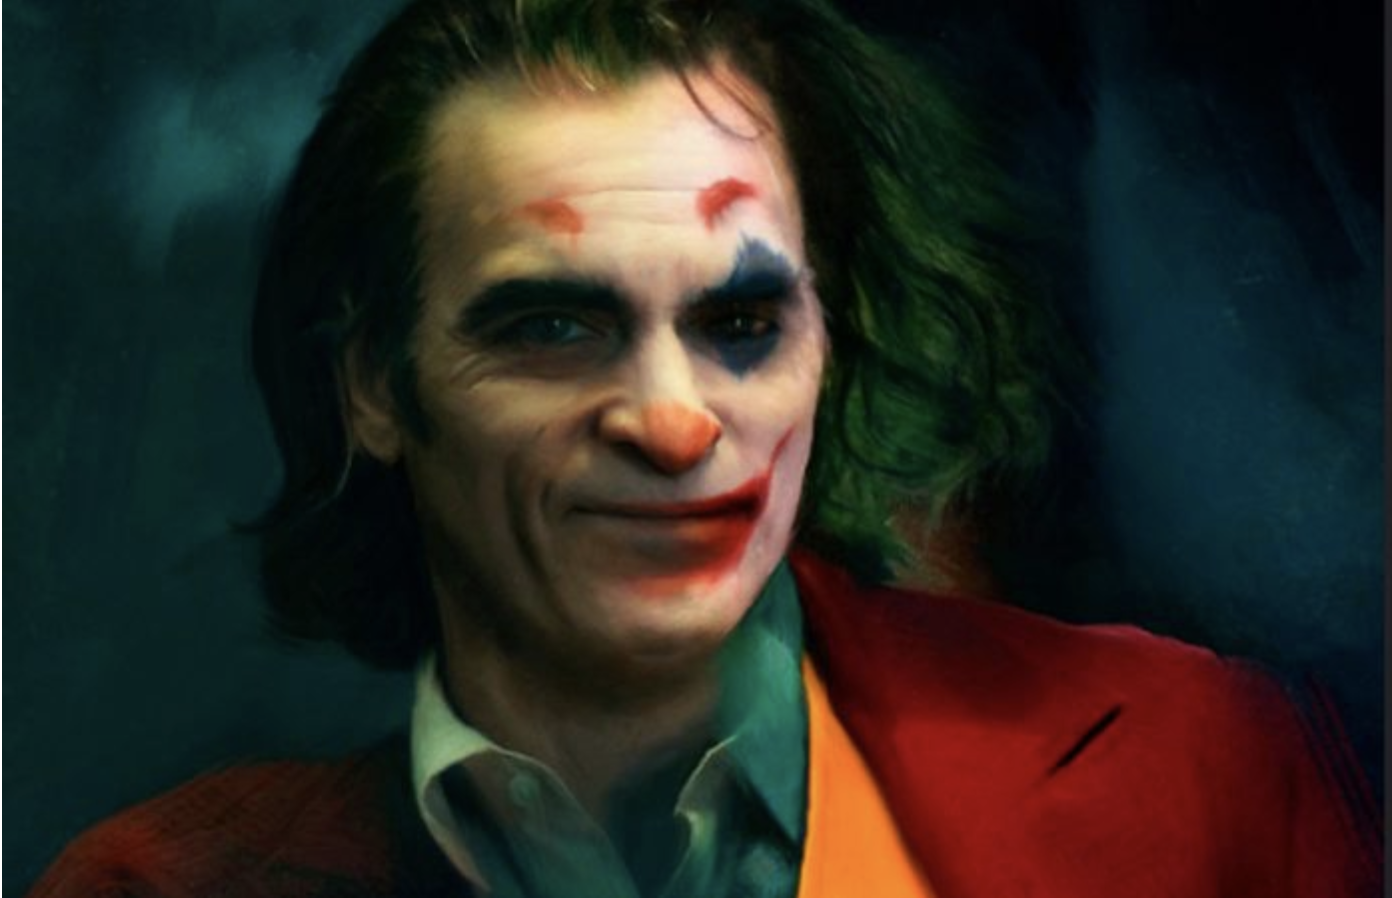 5 riflessioni sul film "Joker"